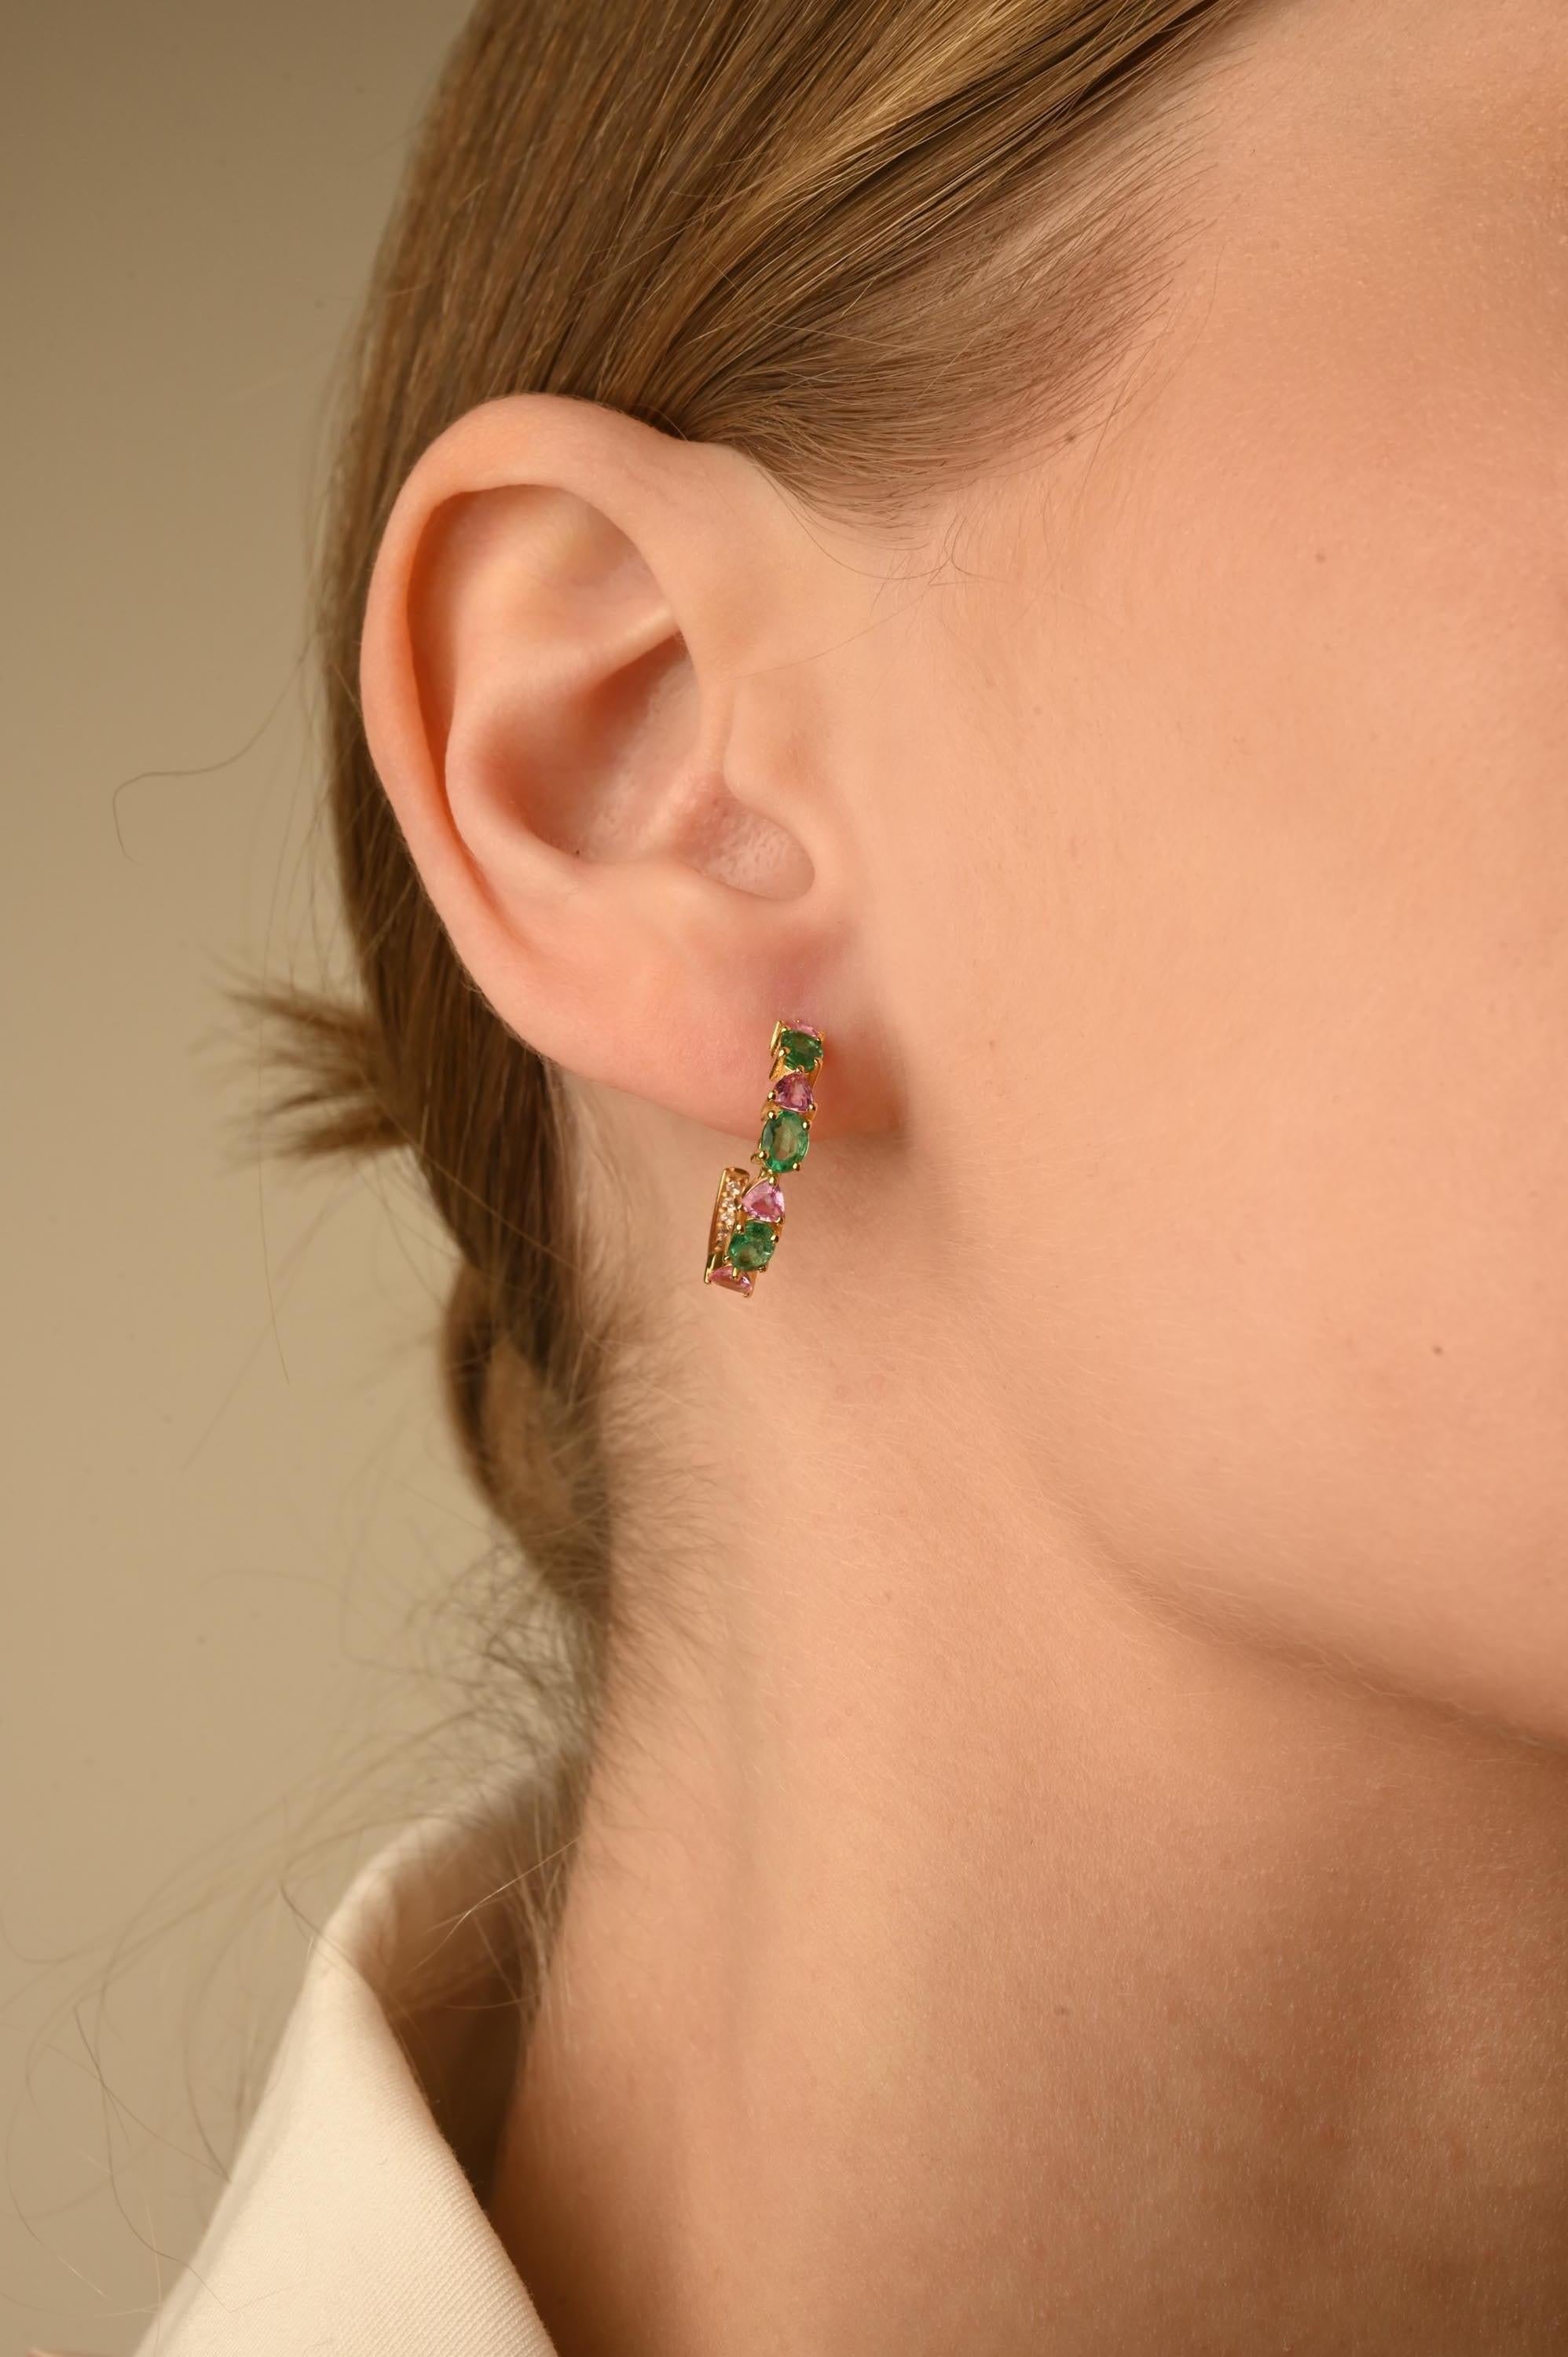 Minimalistische Smaragd- und rosa Saphir-Ohrringe aus 14-karätigem Gold mit Diamanten, die Ihren Look unterstreichen. Um mit Ihrem Look ein Statement zu setzen, brauchen Sie offene Reif-Ohrringe. Diese Ohrringe sorgen für einen funkelnden,